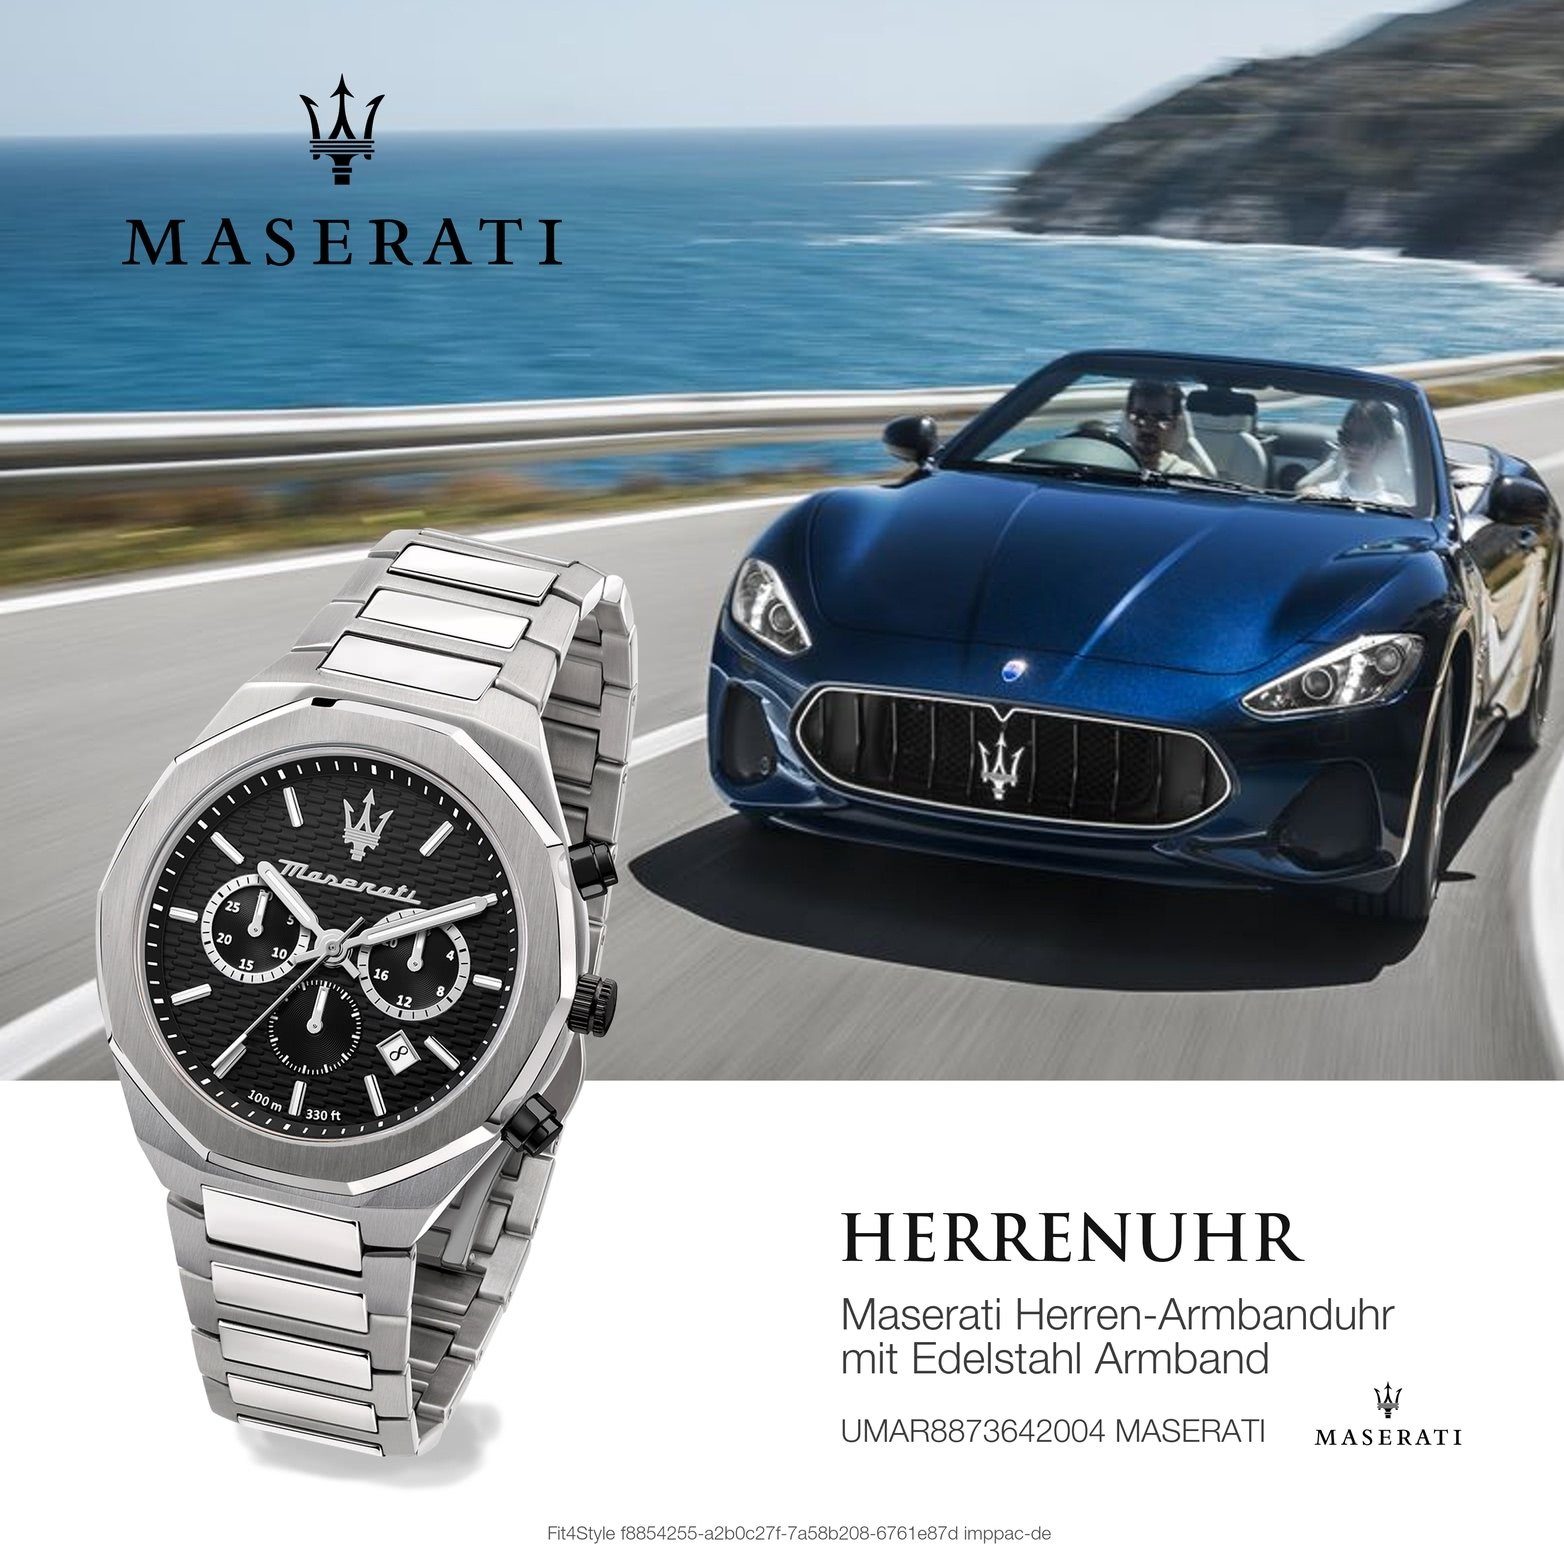 Gehäuse, MASERATI Armband-Uhr, rundes Maserati Edelstahlarmband, 45mm) Herrenuhr groß Chronograph Edelstahl schwarz (ca.